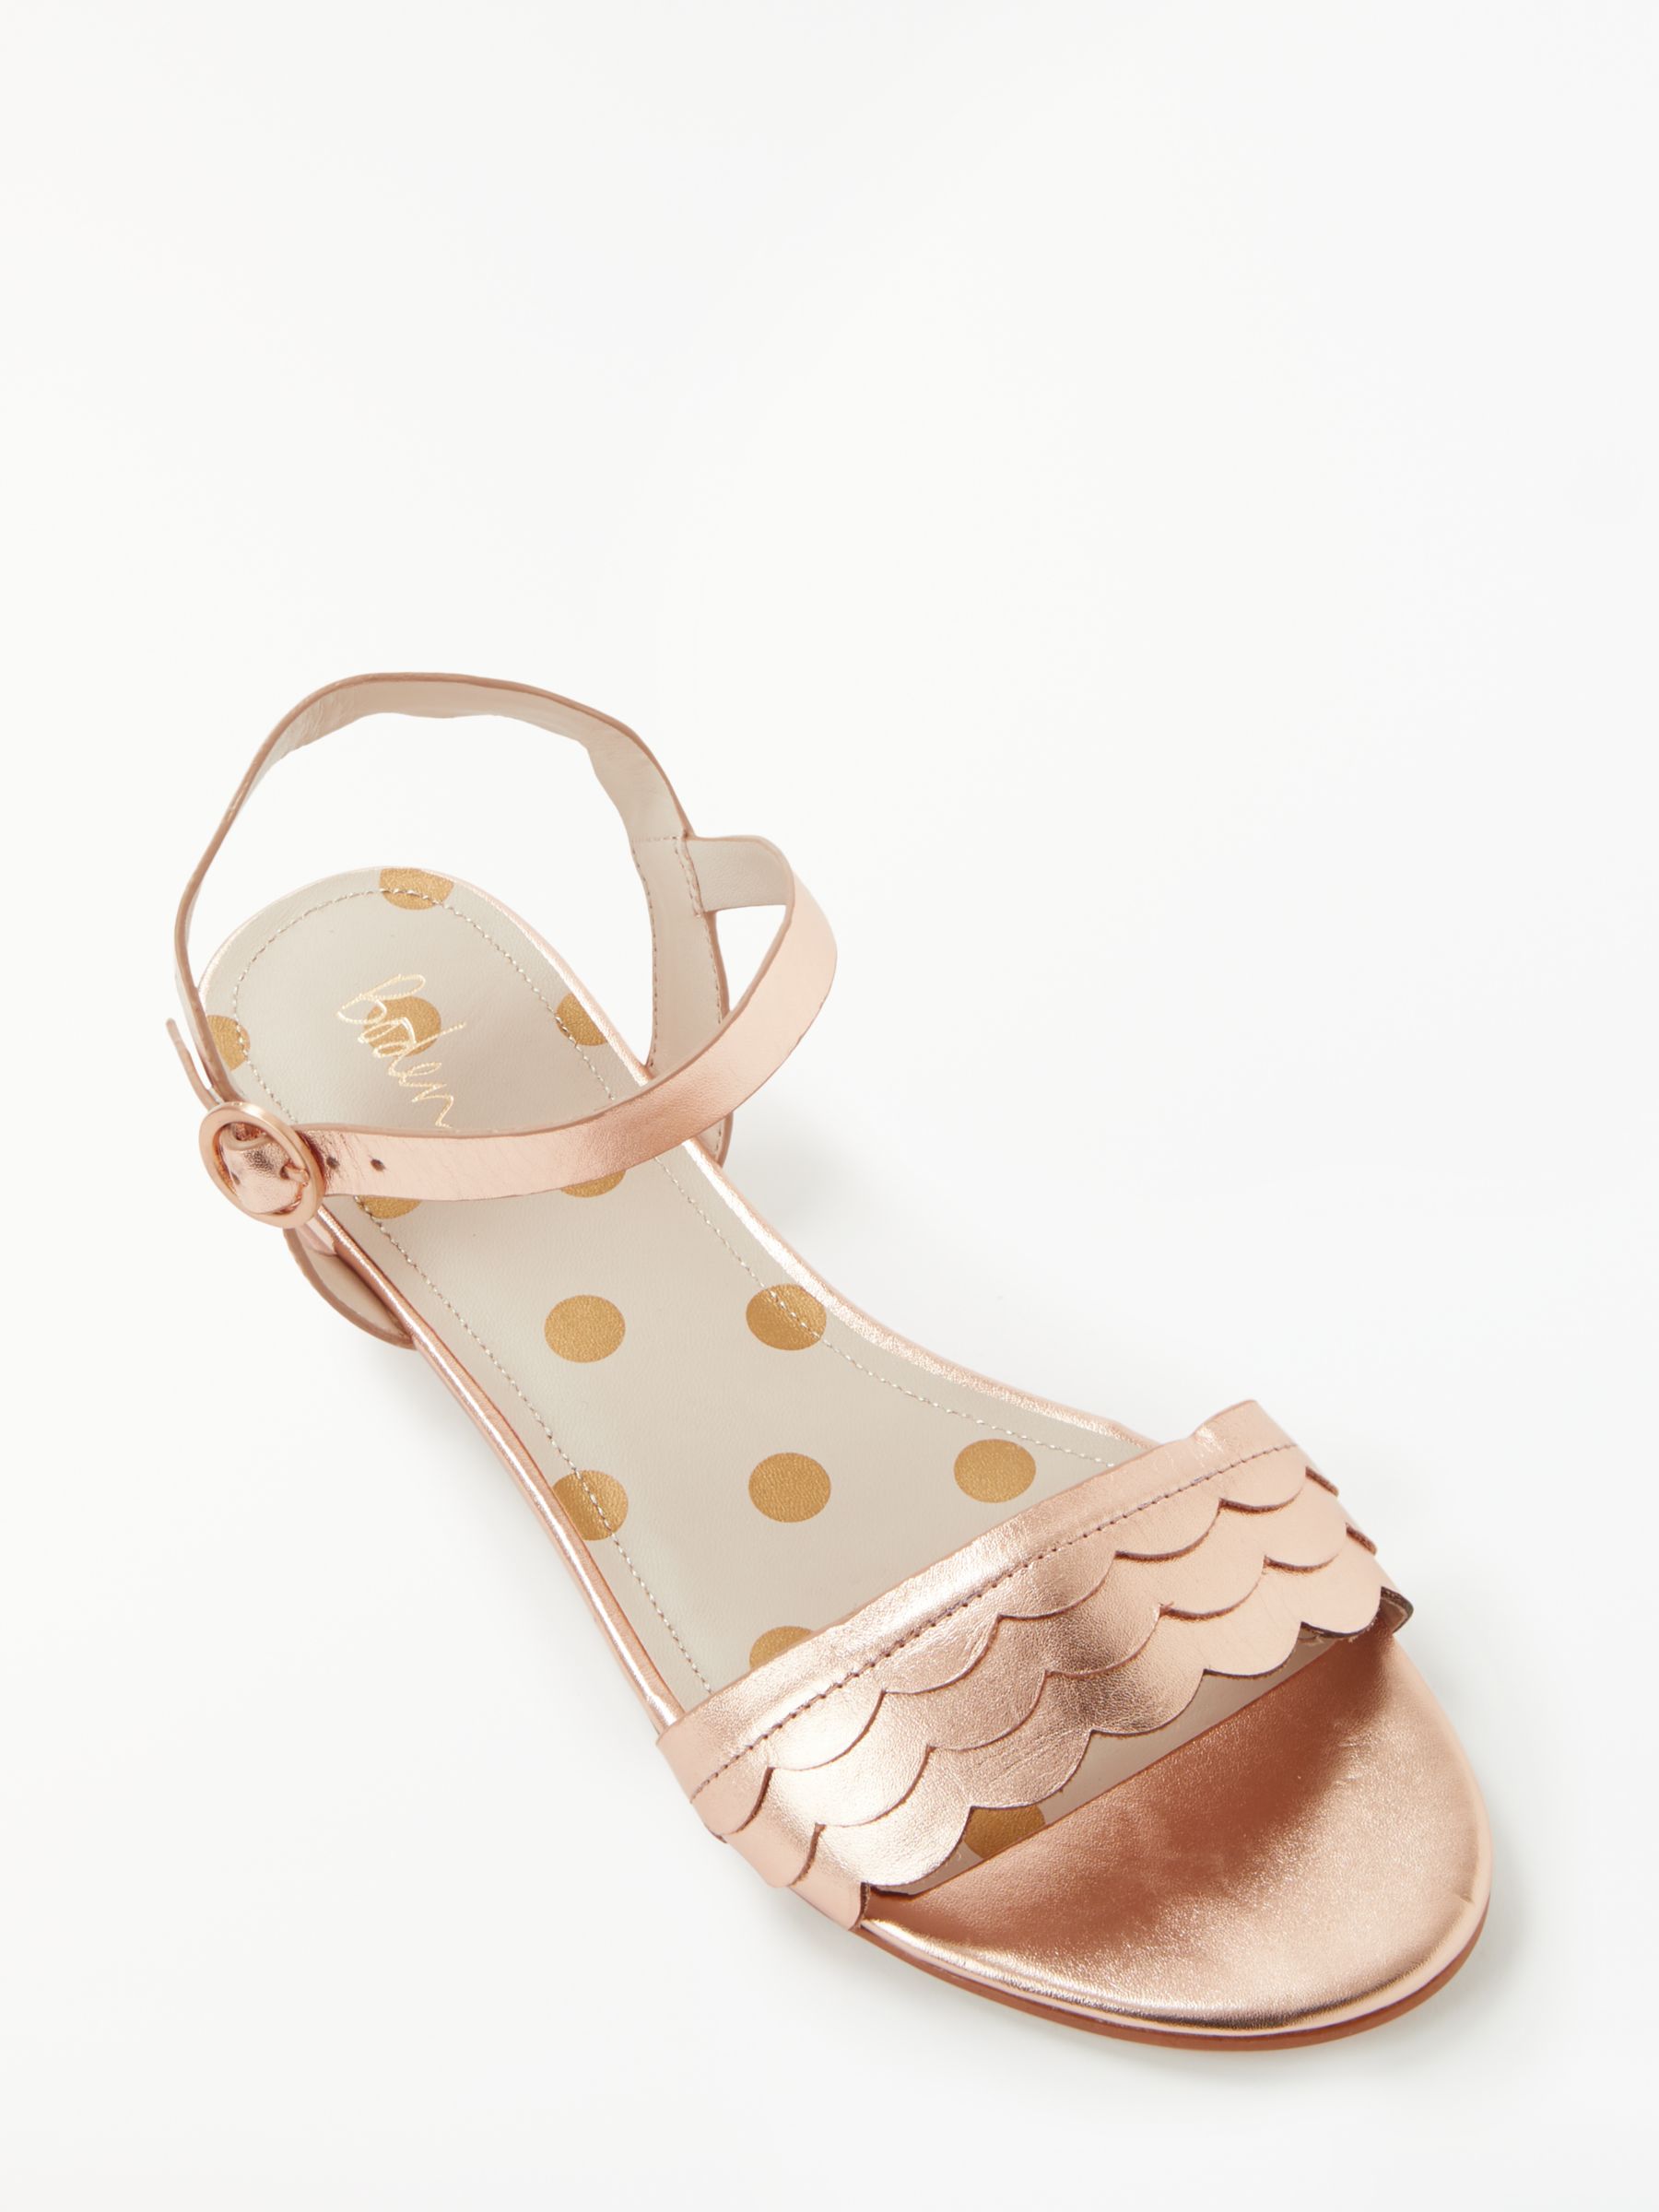 boden rose gold sandals